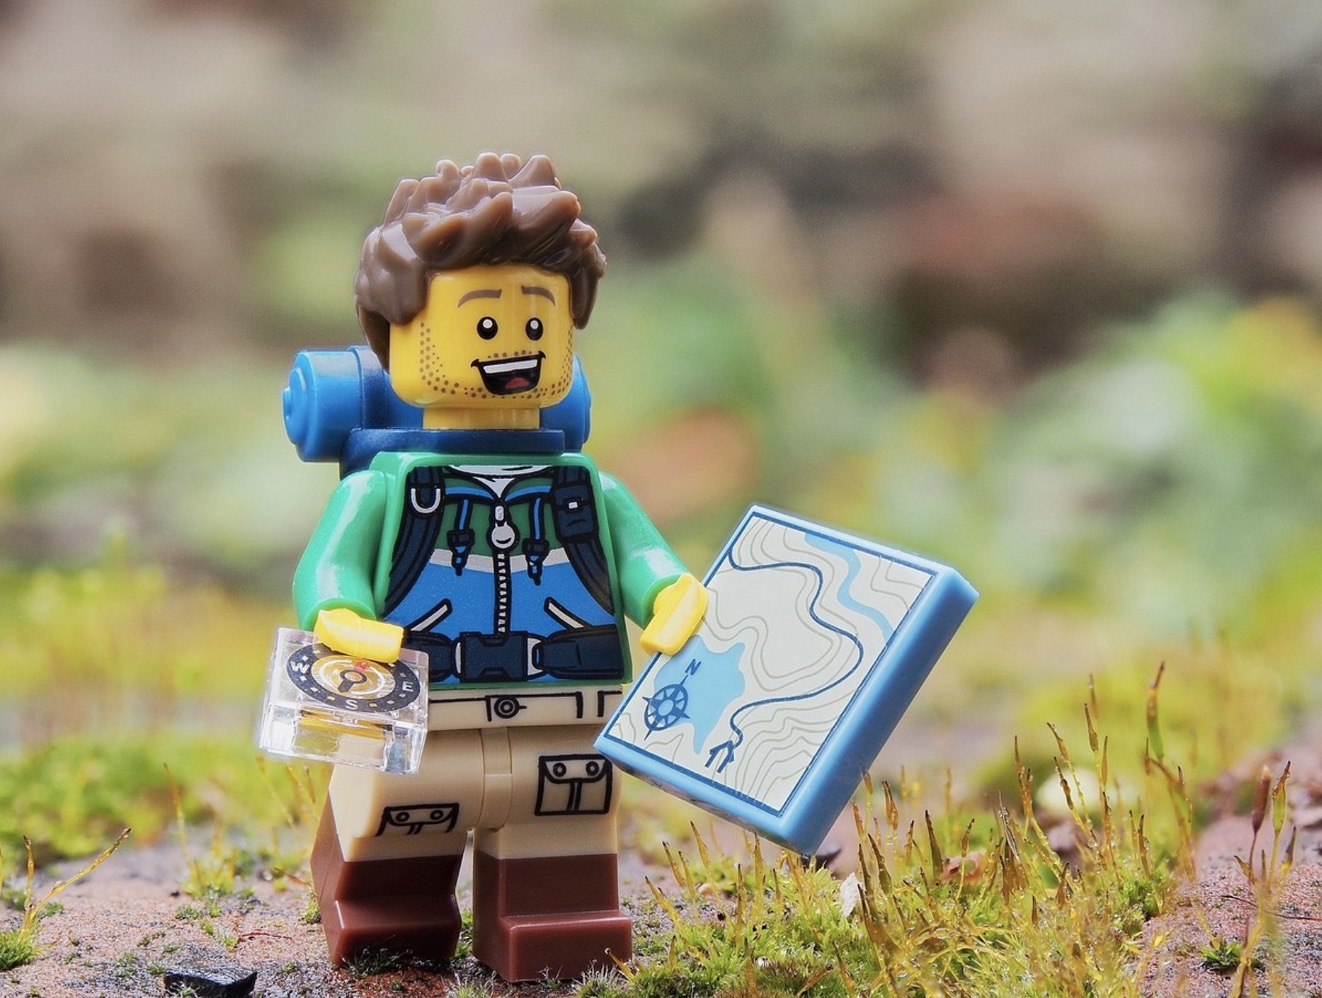 Personnage explorateur Lego pour jouer